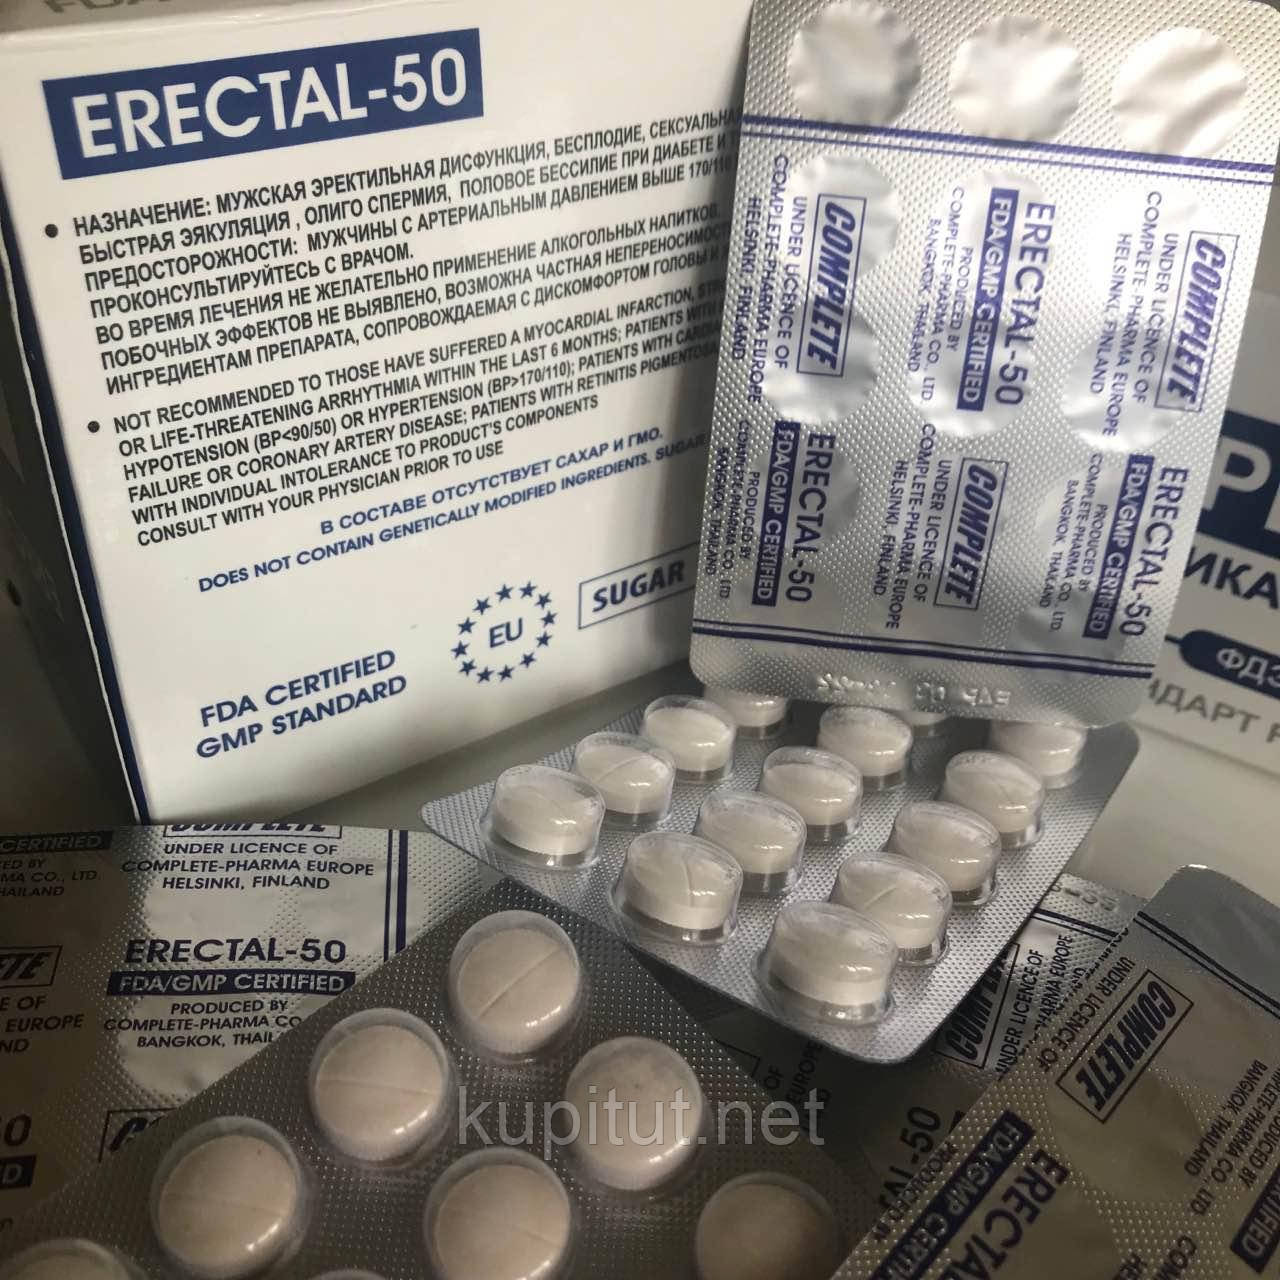 Еректал 50 (уцінка)
натуральні таблетки для урологічних захворювань, по 400 мг. Фінляндія